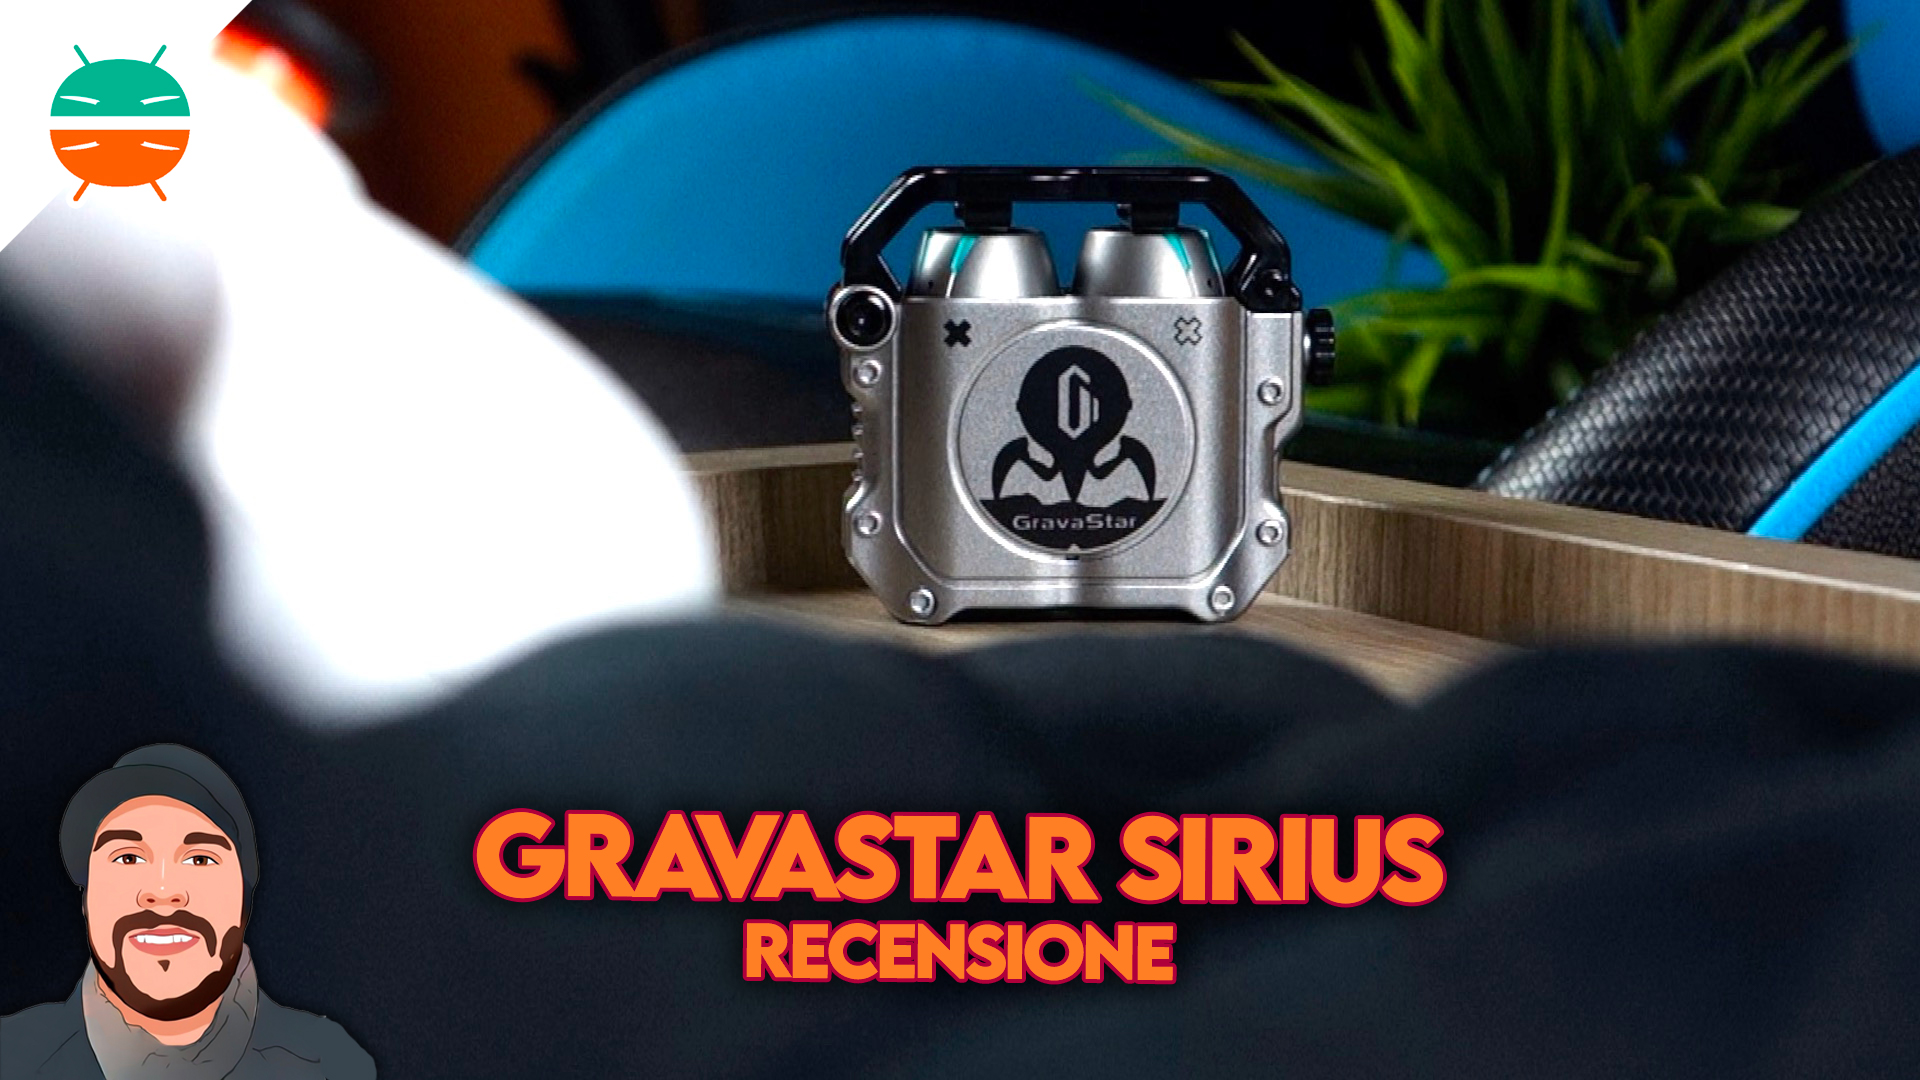 Revue Gravastar Sirius: casque Bluetooth avec un super design - GizChina.it